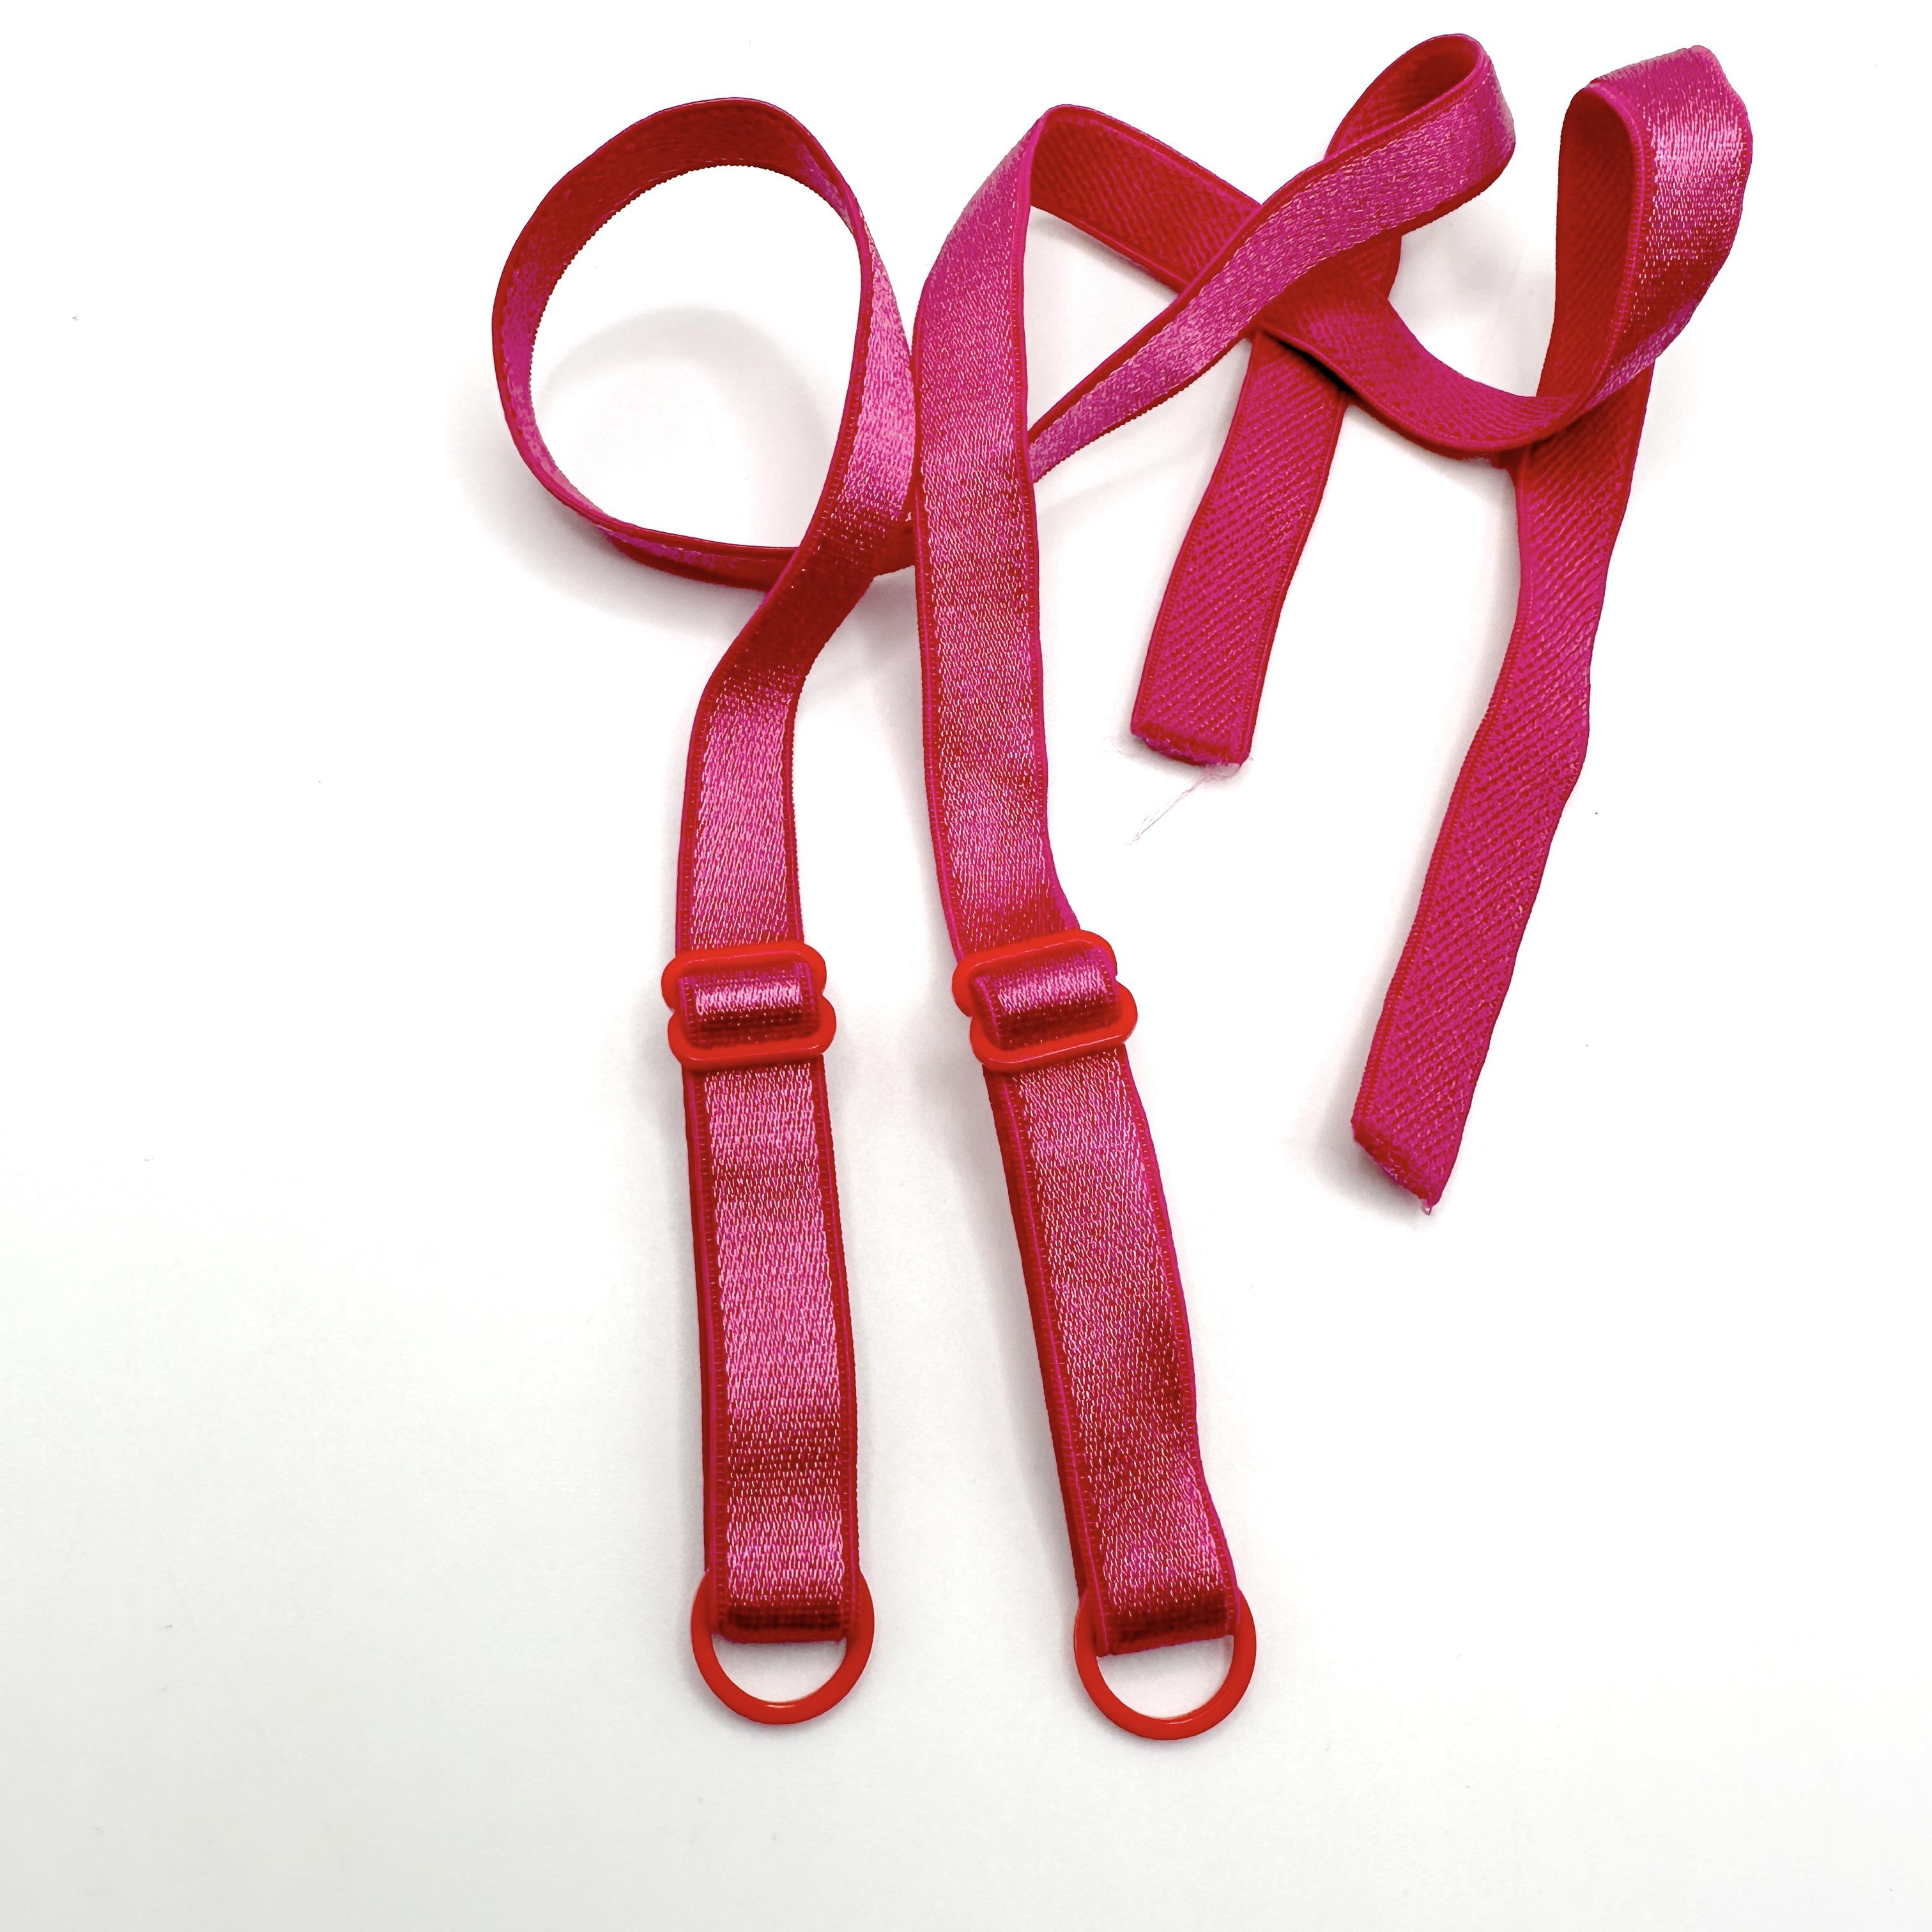 https://cdn.ecommercedns.uk/files/6/235836/5/30225695/sew-on-bright-cerise-pink-bra-straps-for-bra-making.jpg